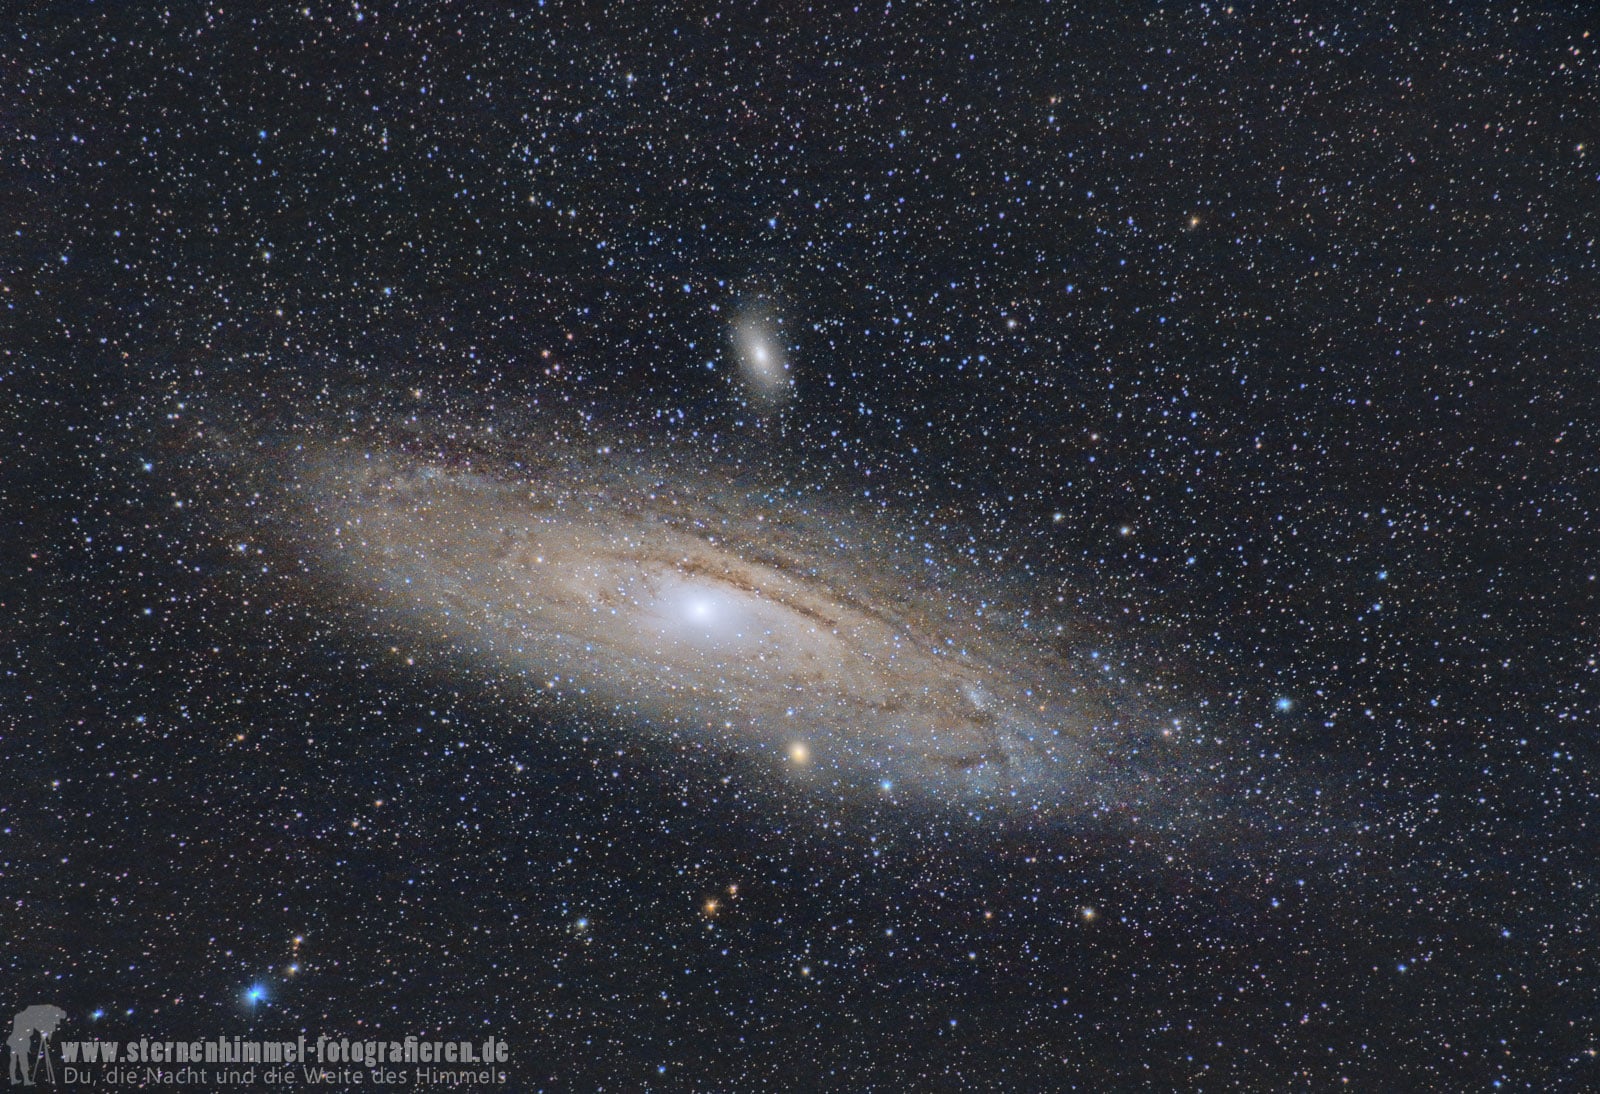 Omegon Mintrack LX3 500 mm Andromeda